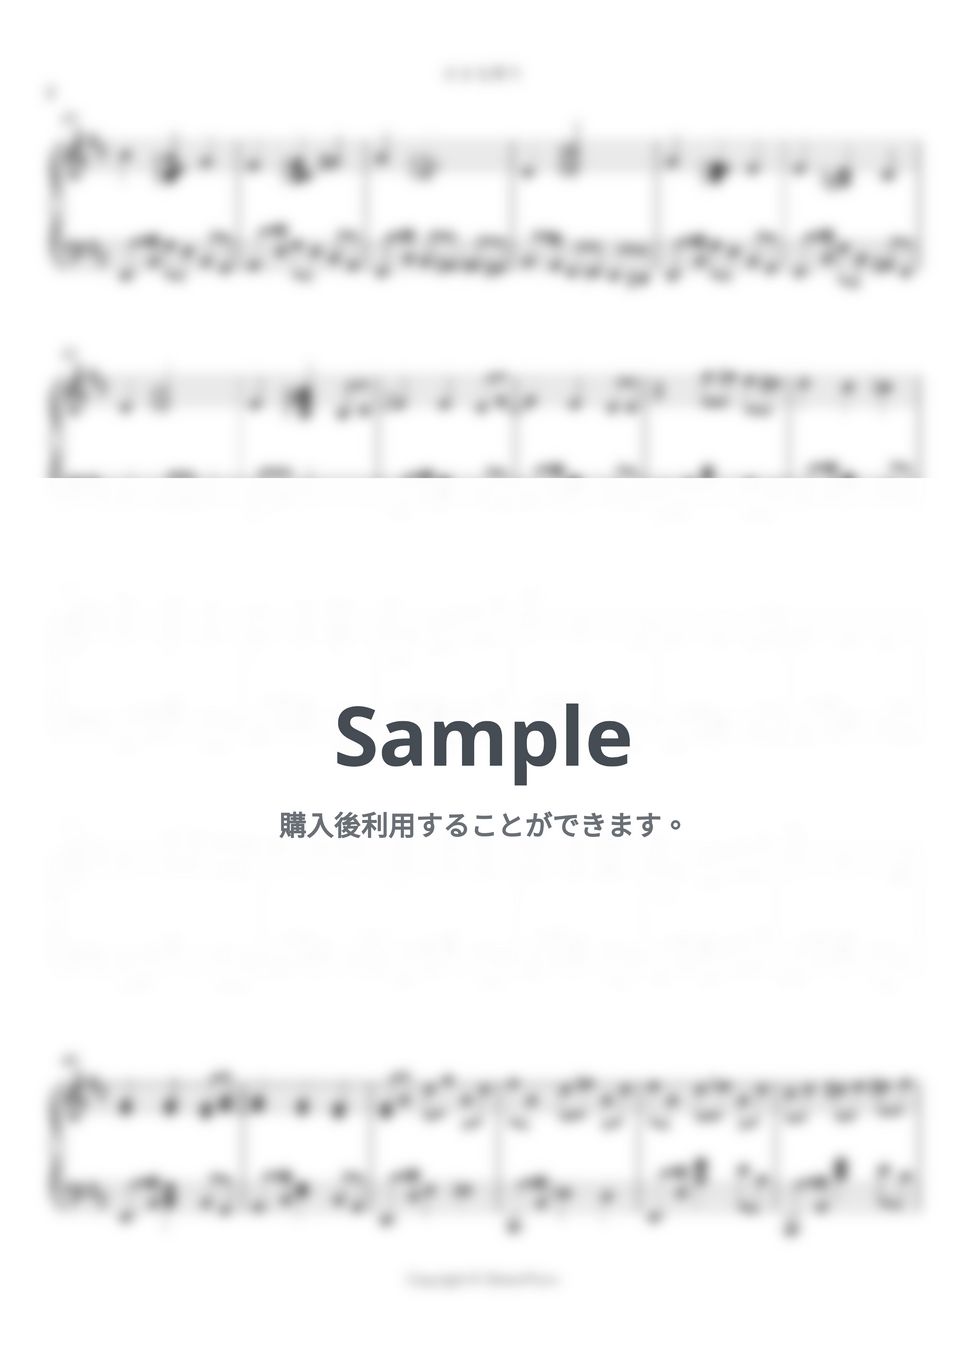 フルーツバスケット - 小さな祈り by シビウォルピアノ